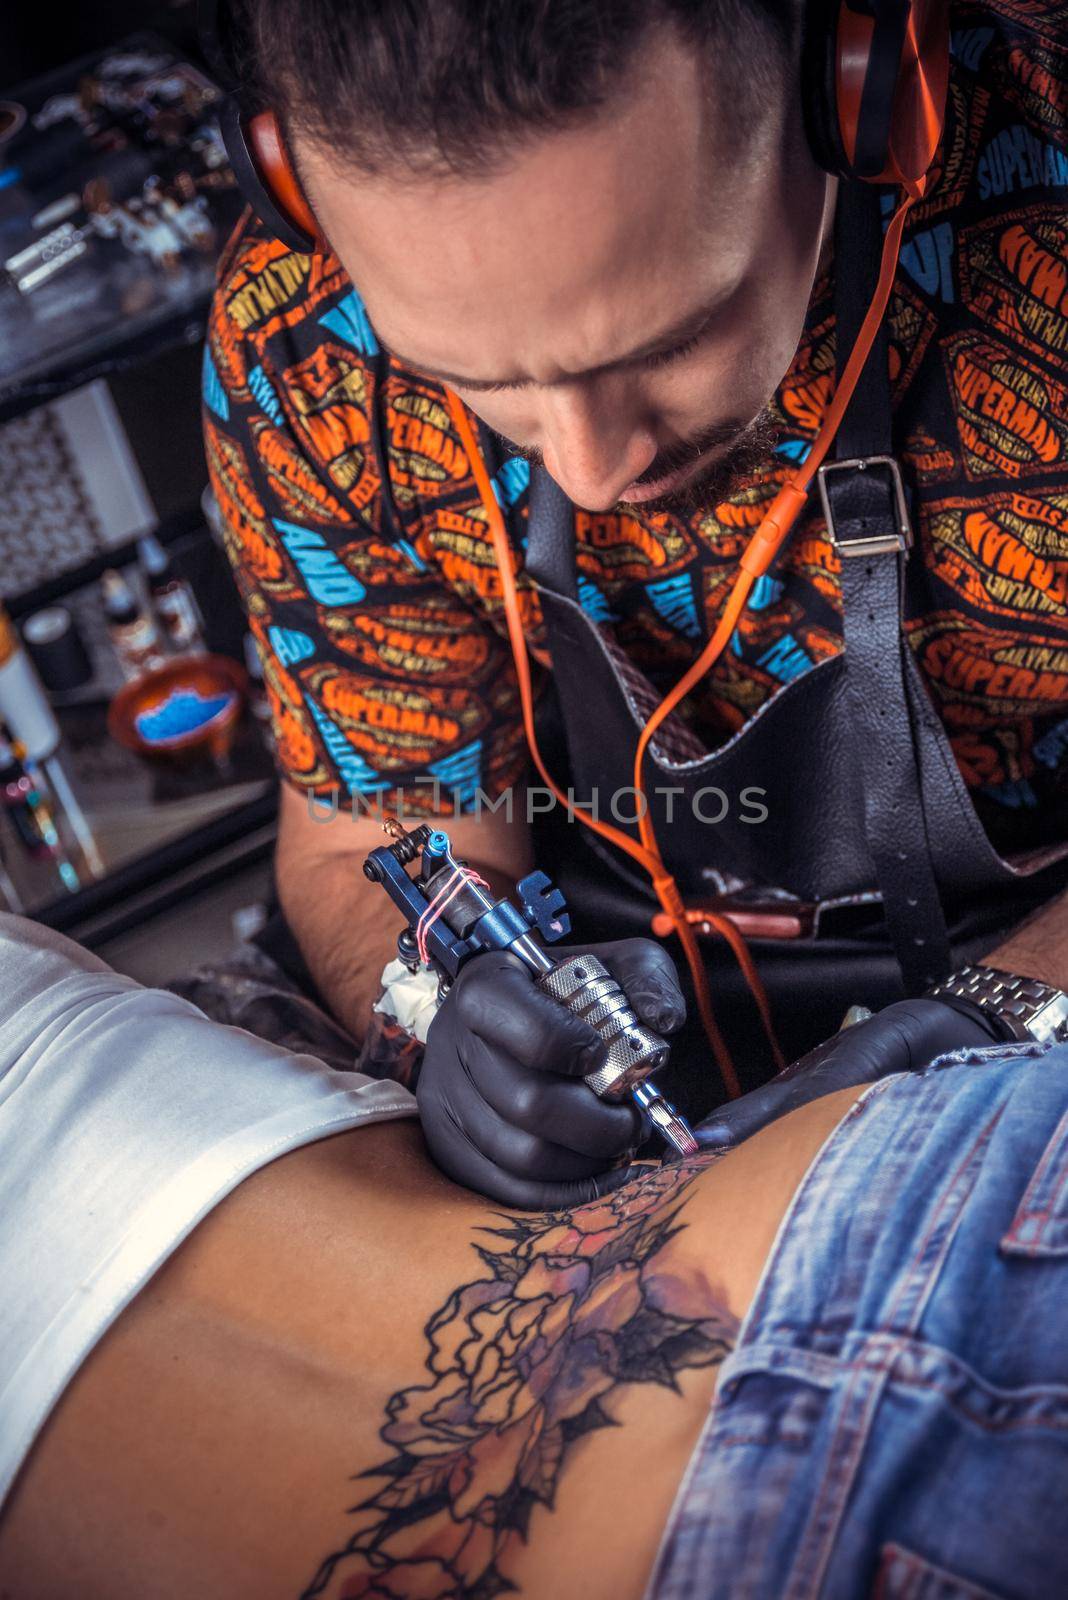 Tattooist create tattoo in tattoo studio./Tattoo specialist makes tattoo in studio.